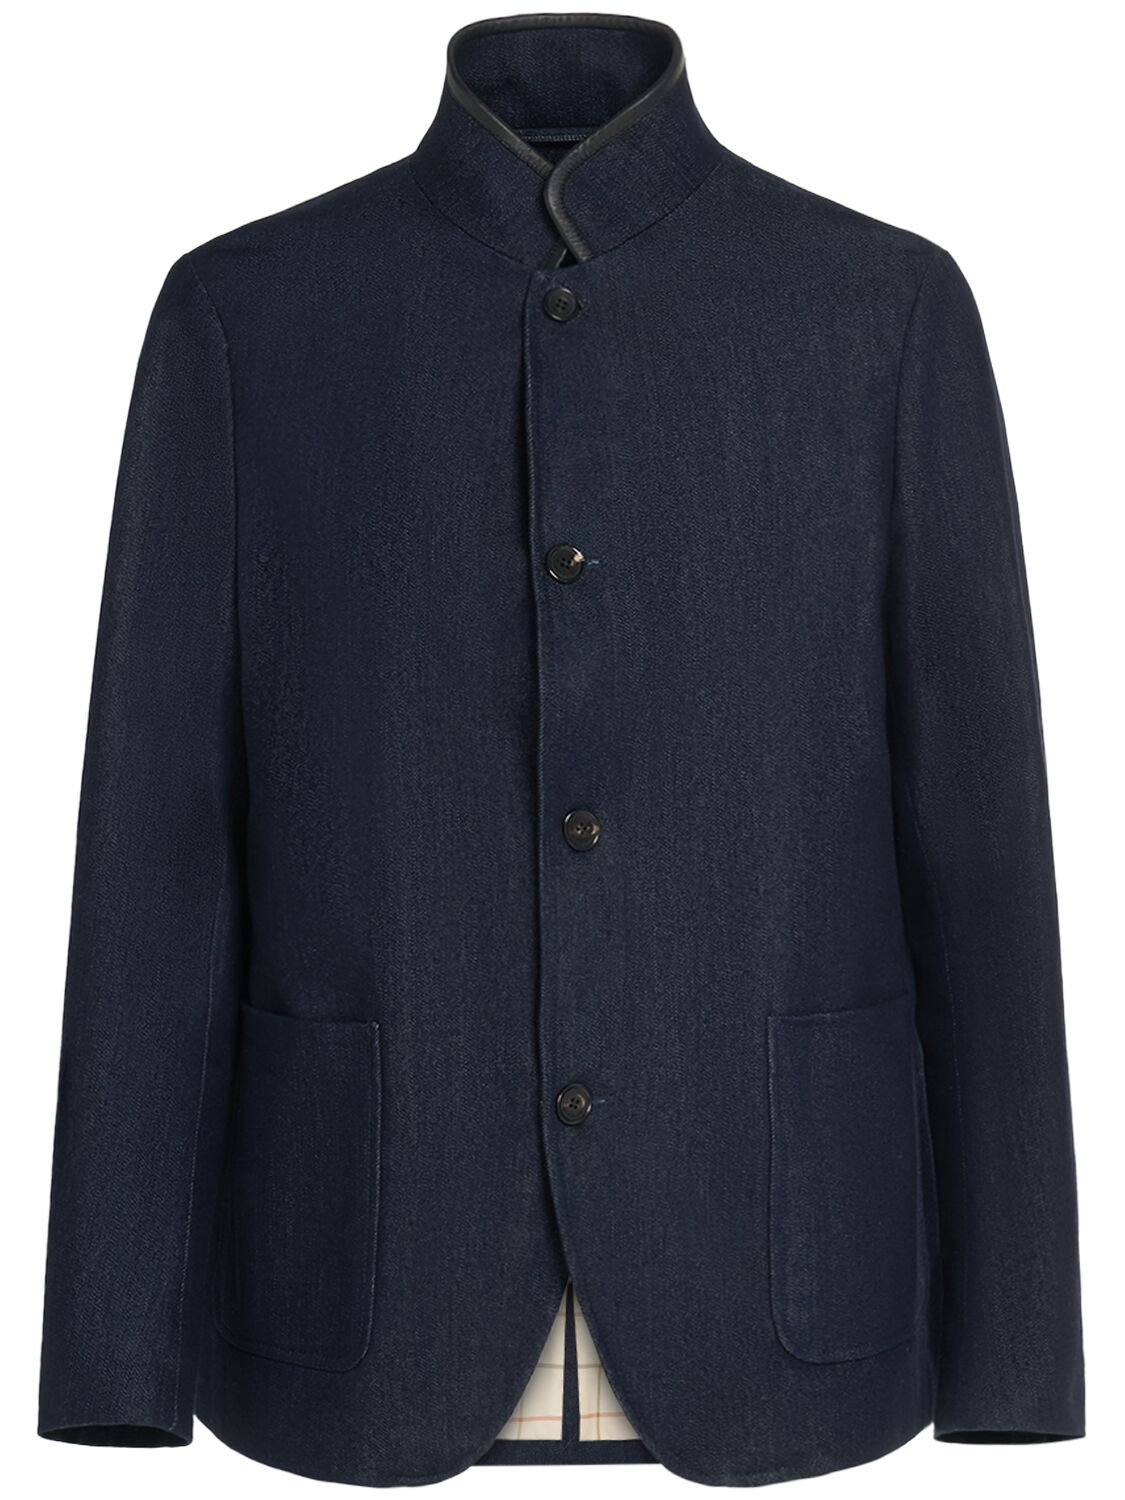 Spagna Cotton & Cashmere Denim Jacket